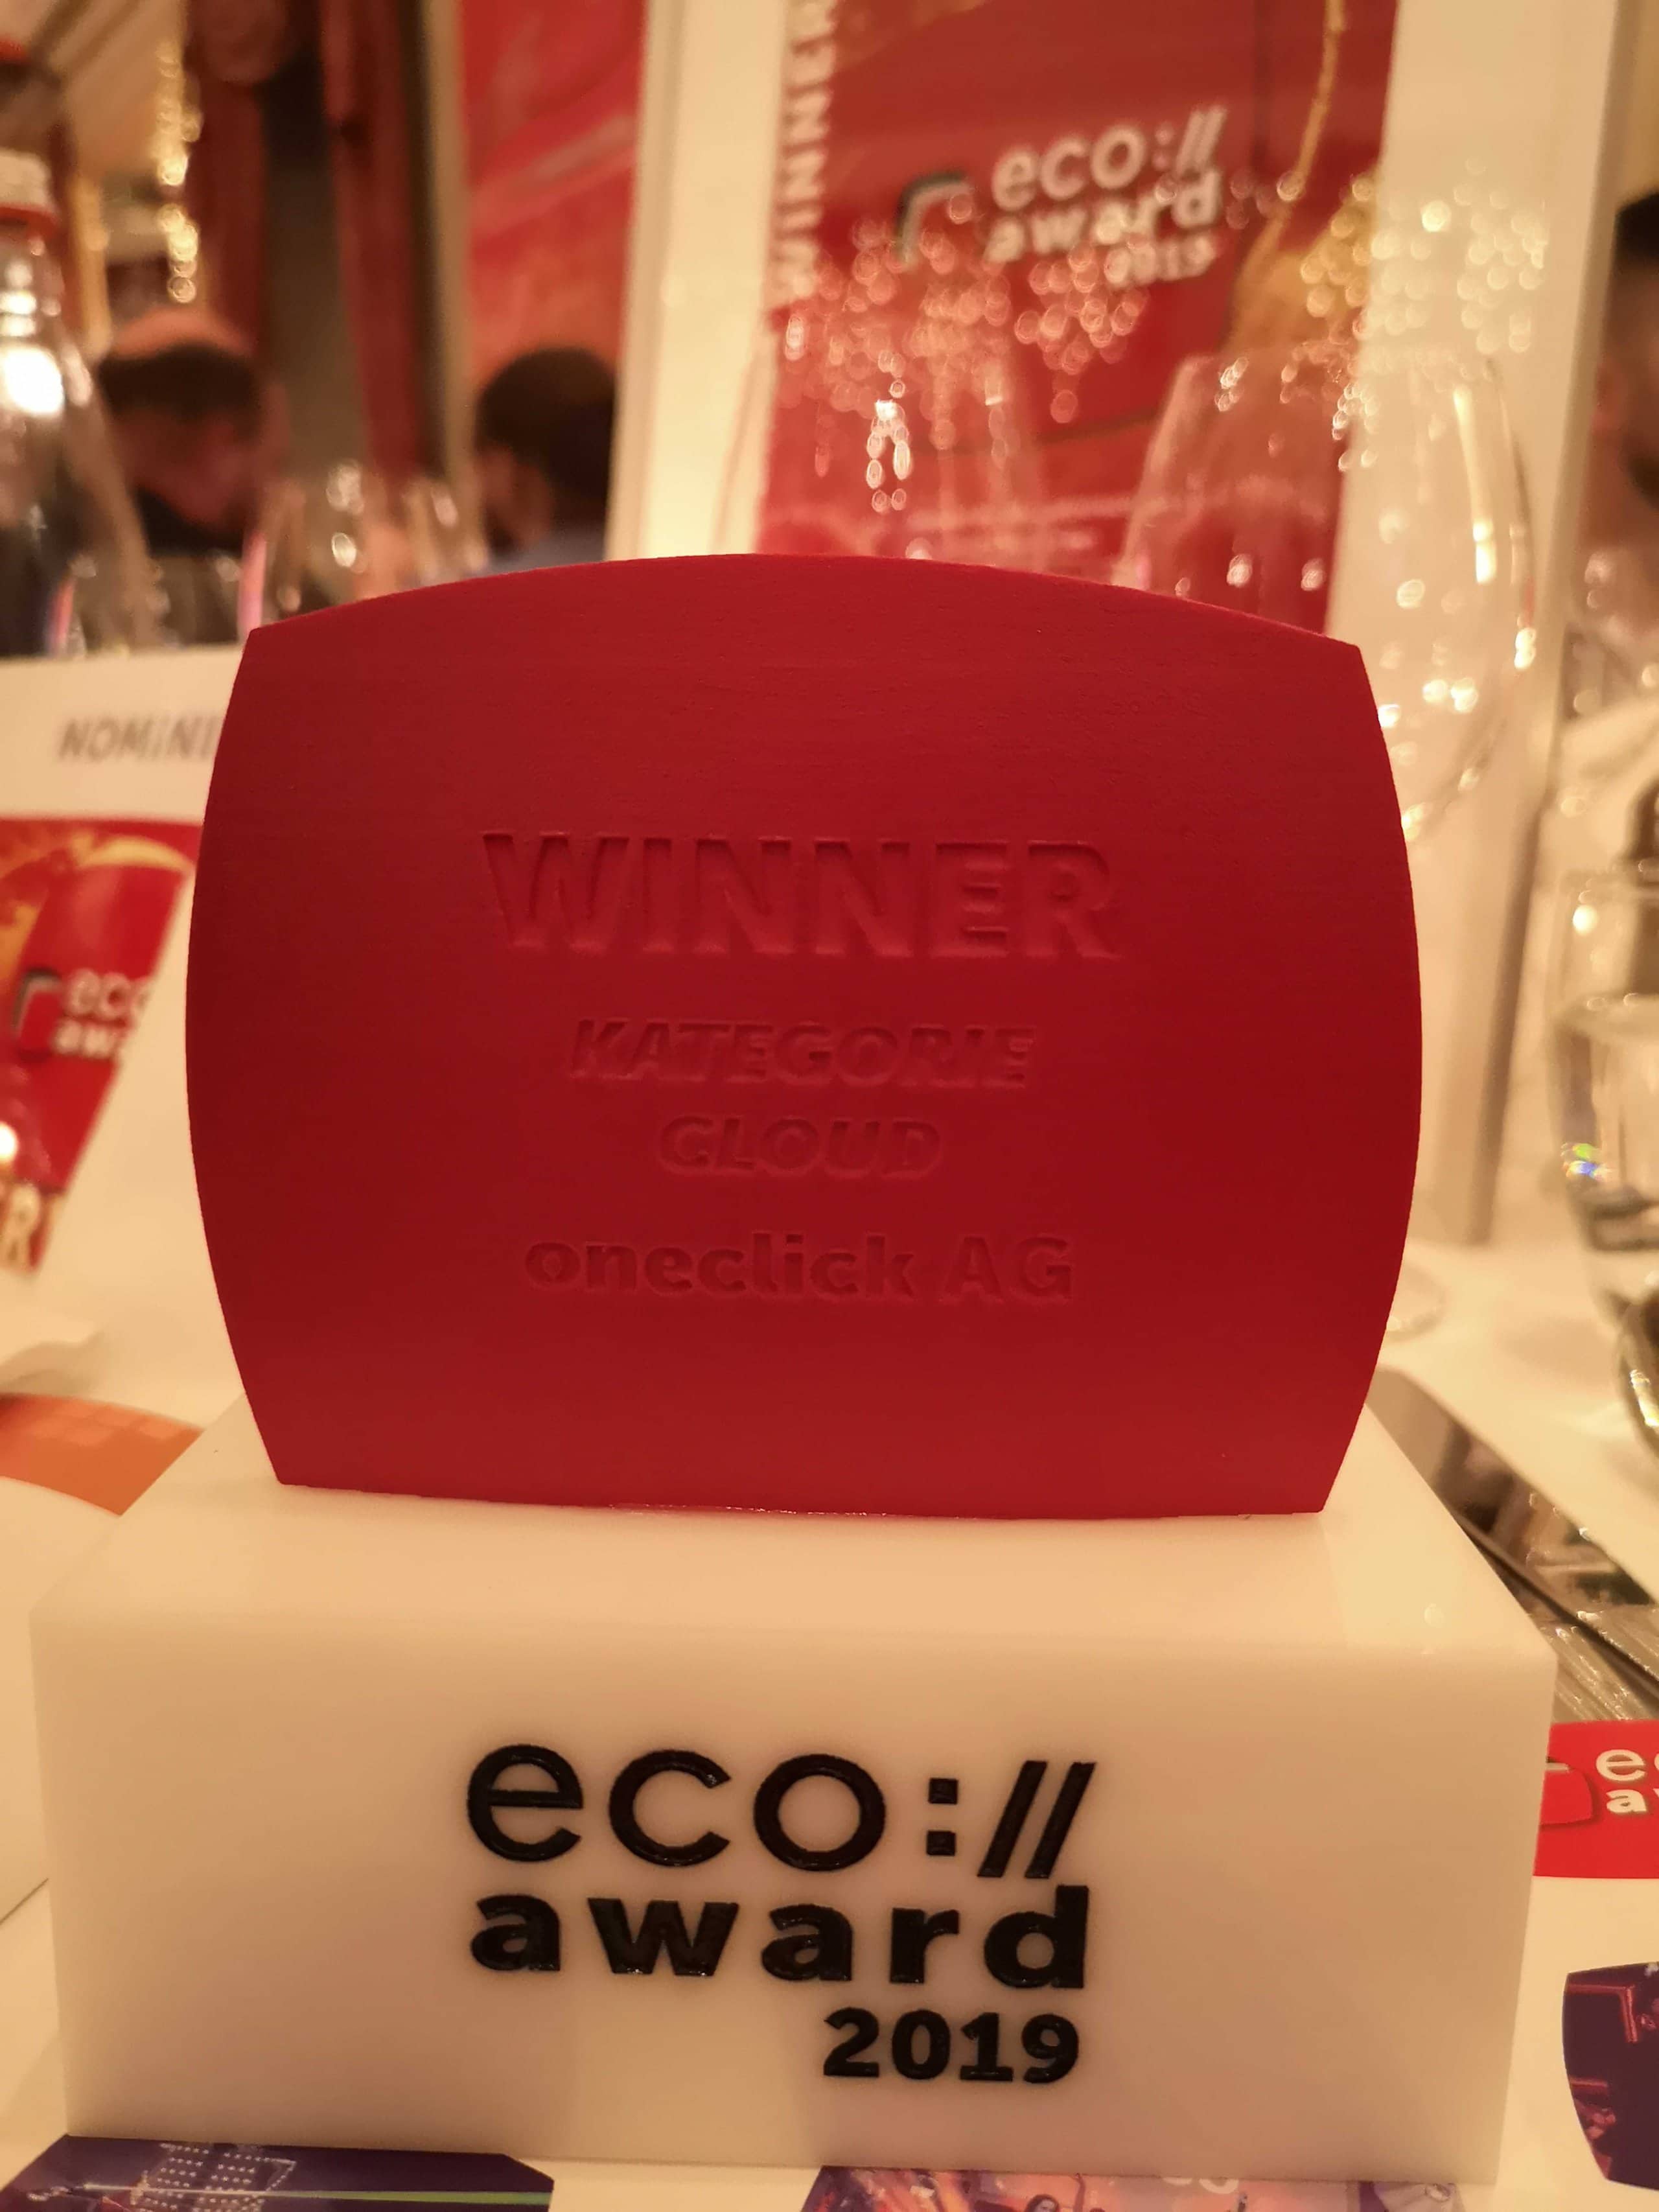 eco://award 2019